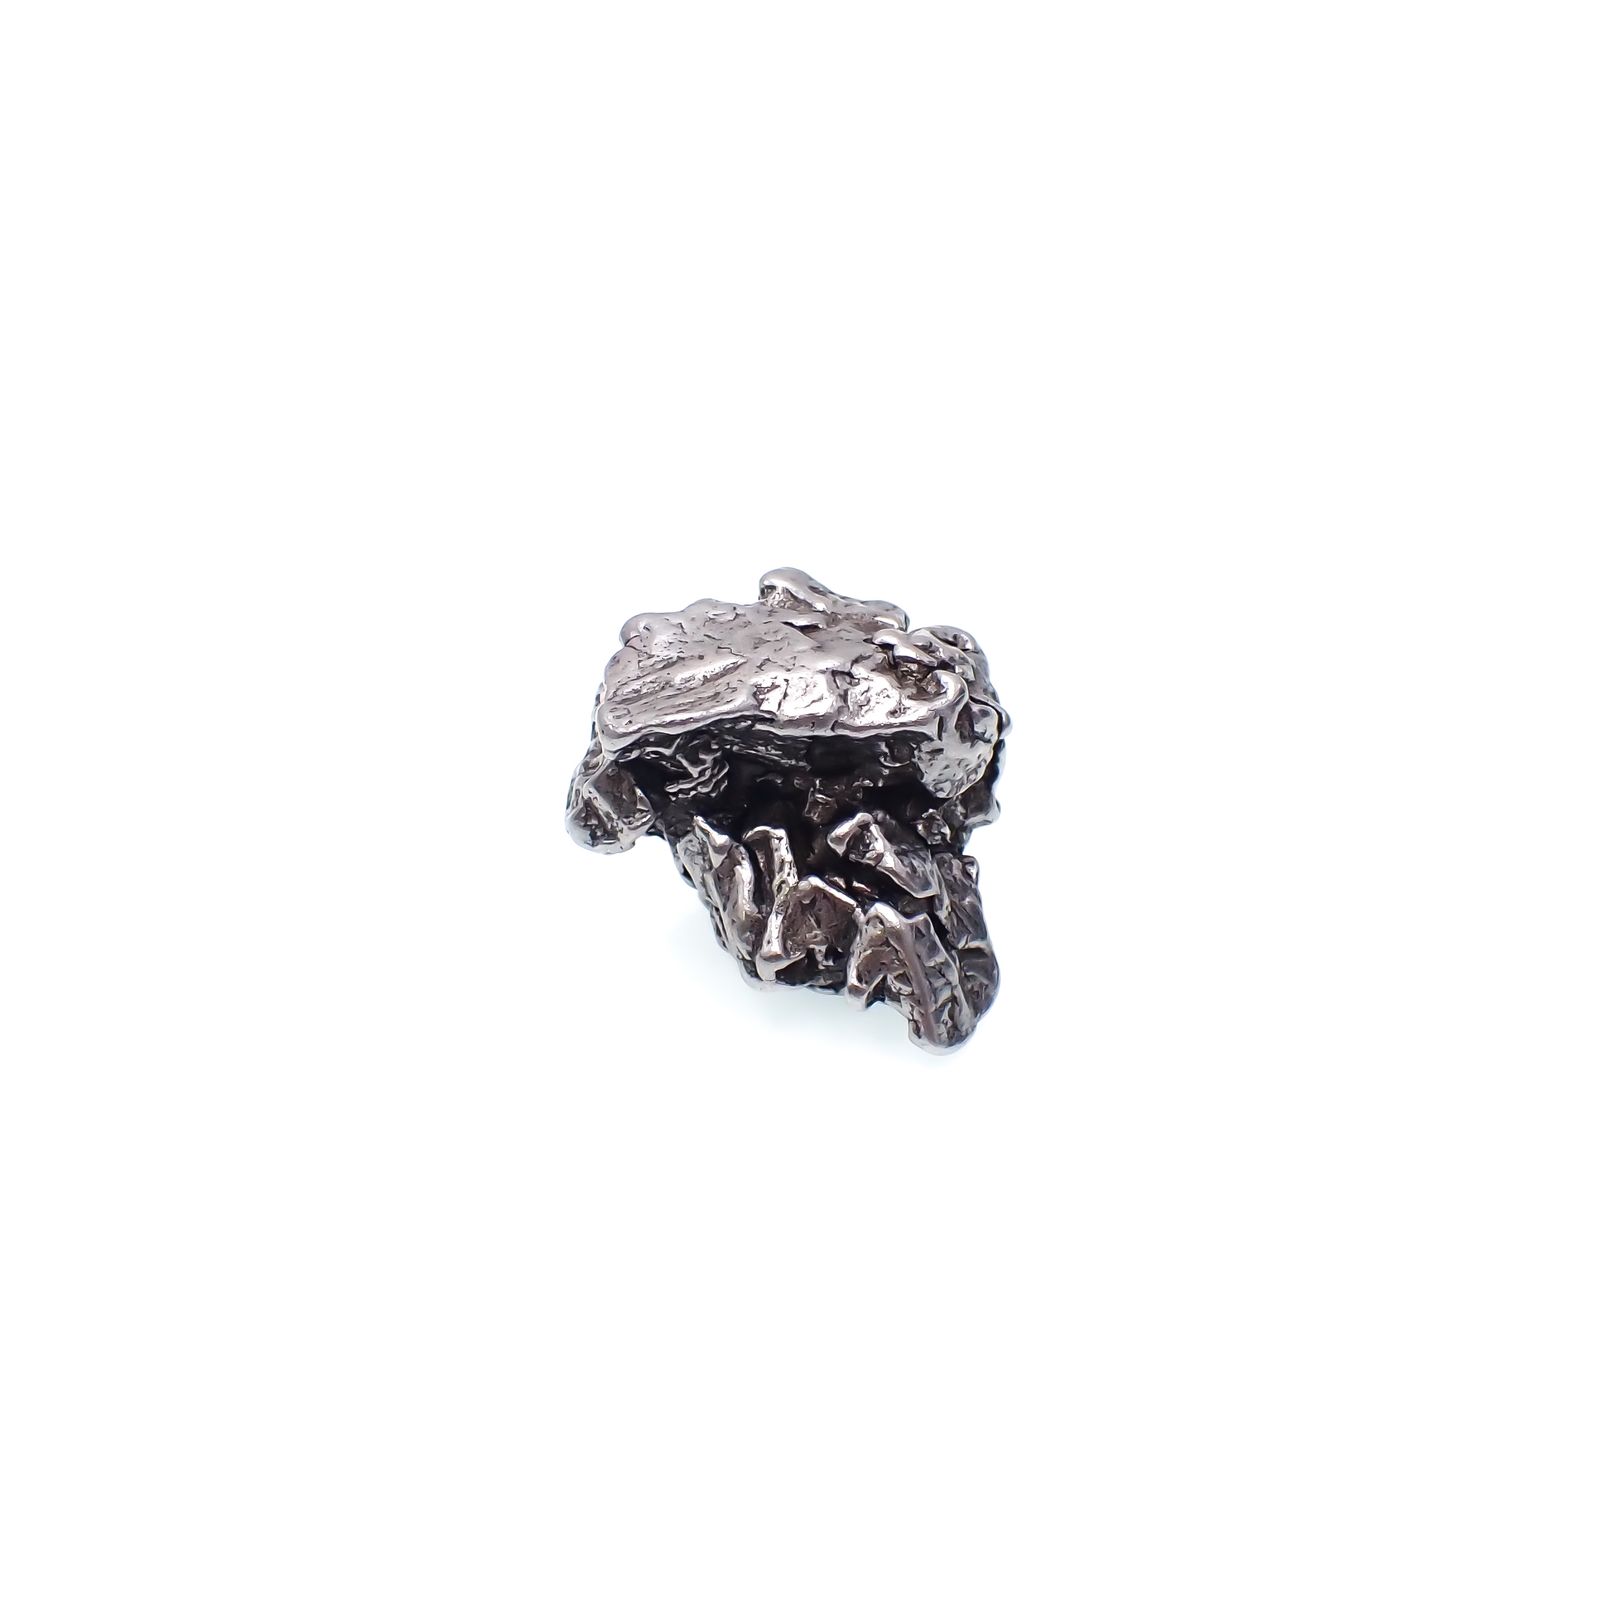 隕石 LOC アルゼンチン カンポ 鉄質隕石 約26g ペンダント トップ-